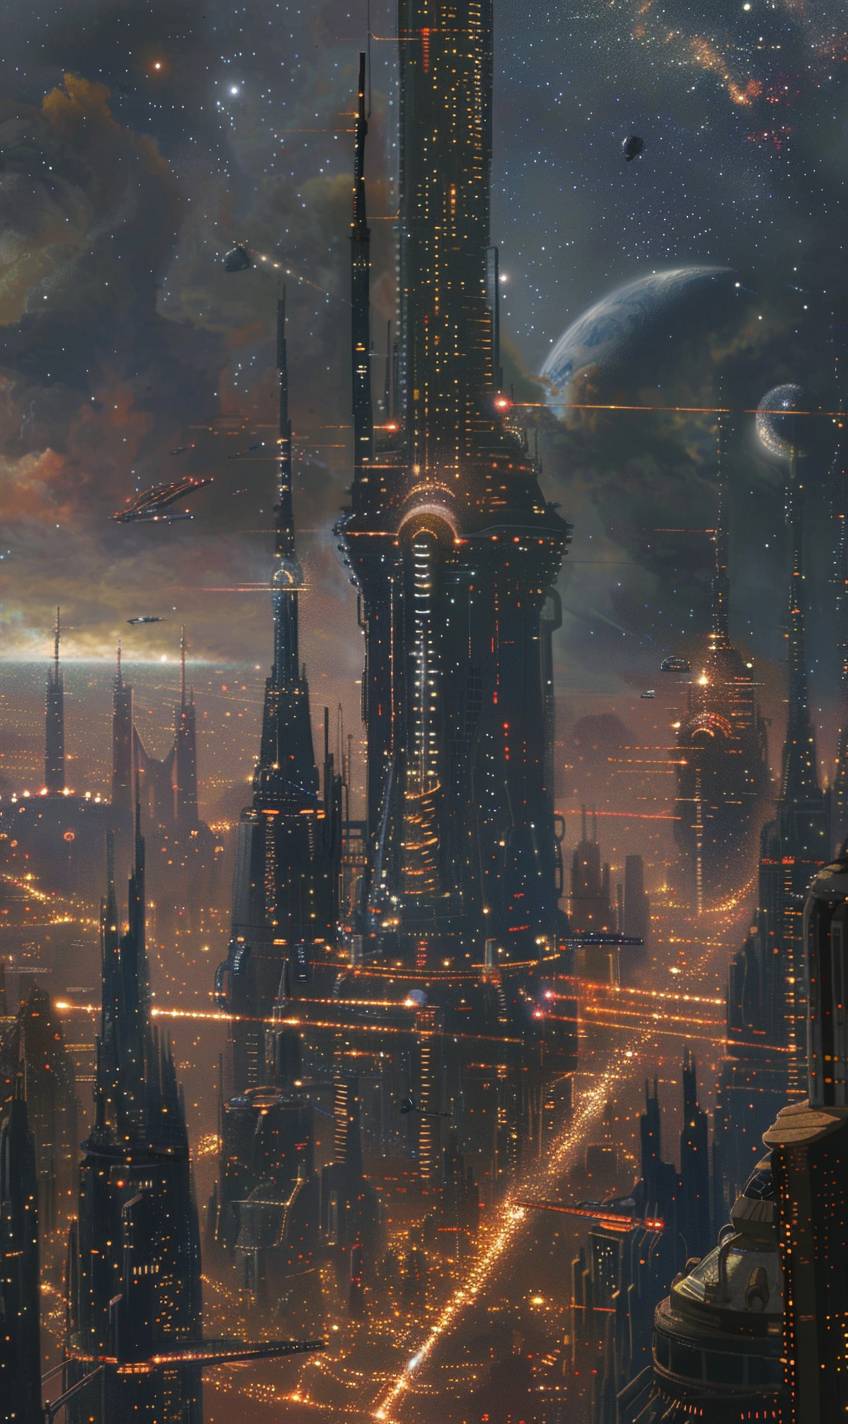 Space Port by Ivan Kramskoi